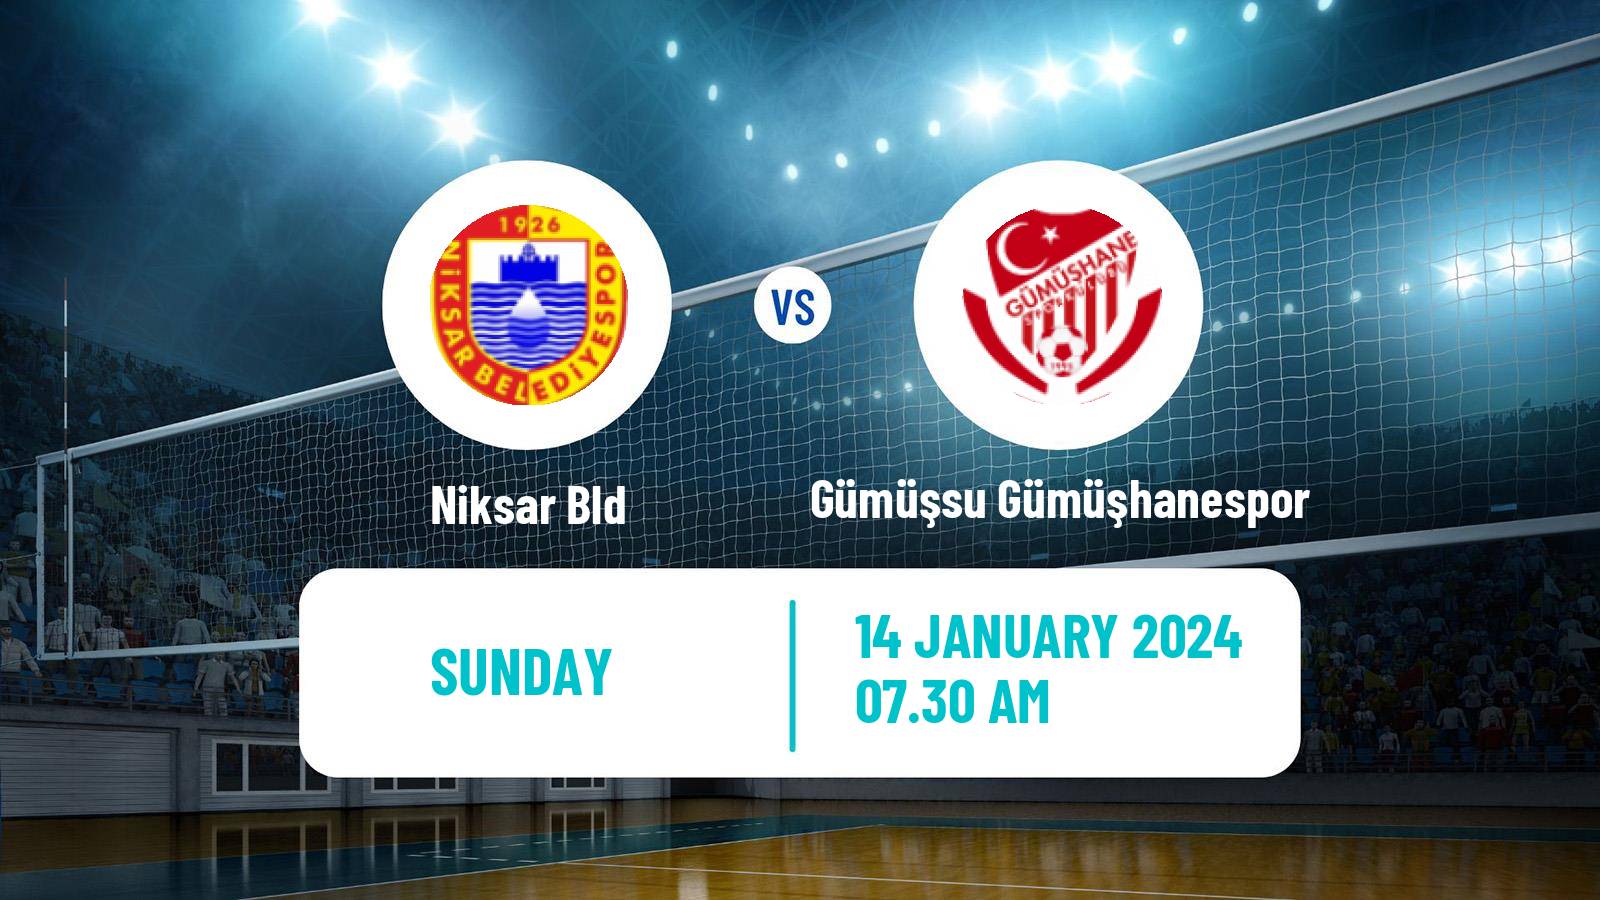 Volleyball Turkish 1 Ligi Volleyball Niksar Bld - Gümüşsu Gümüşhanespor